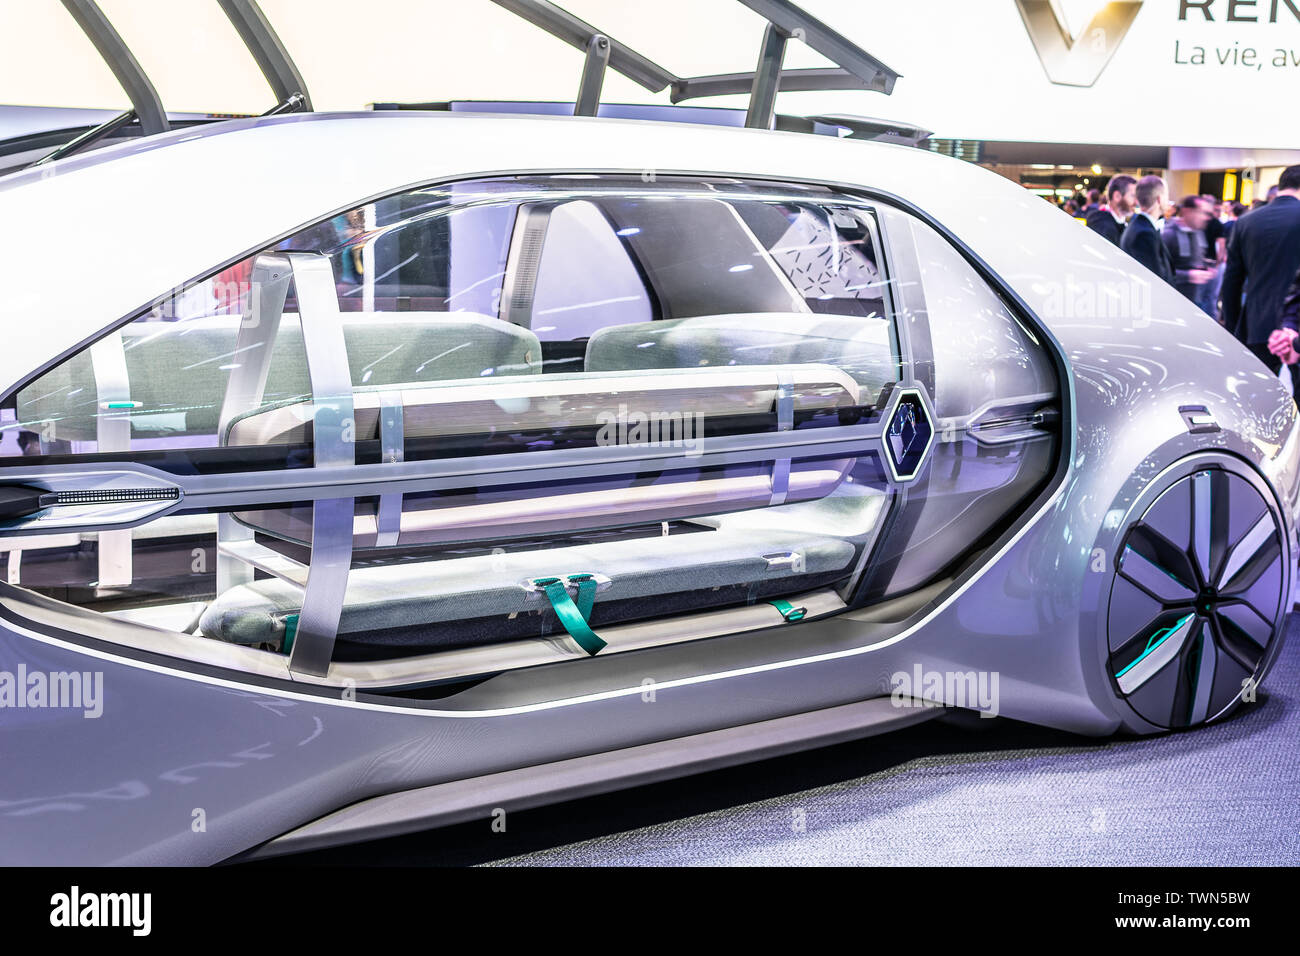 Paris, France, Oct 04, 2018 electric autonomous robot taxi car Renault EZ-GO concept prototype, Mondial Paris Motor Show, autonom produced by Renault Stock Photo